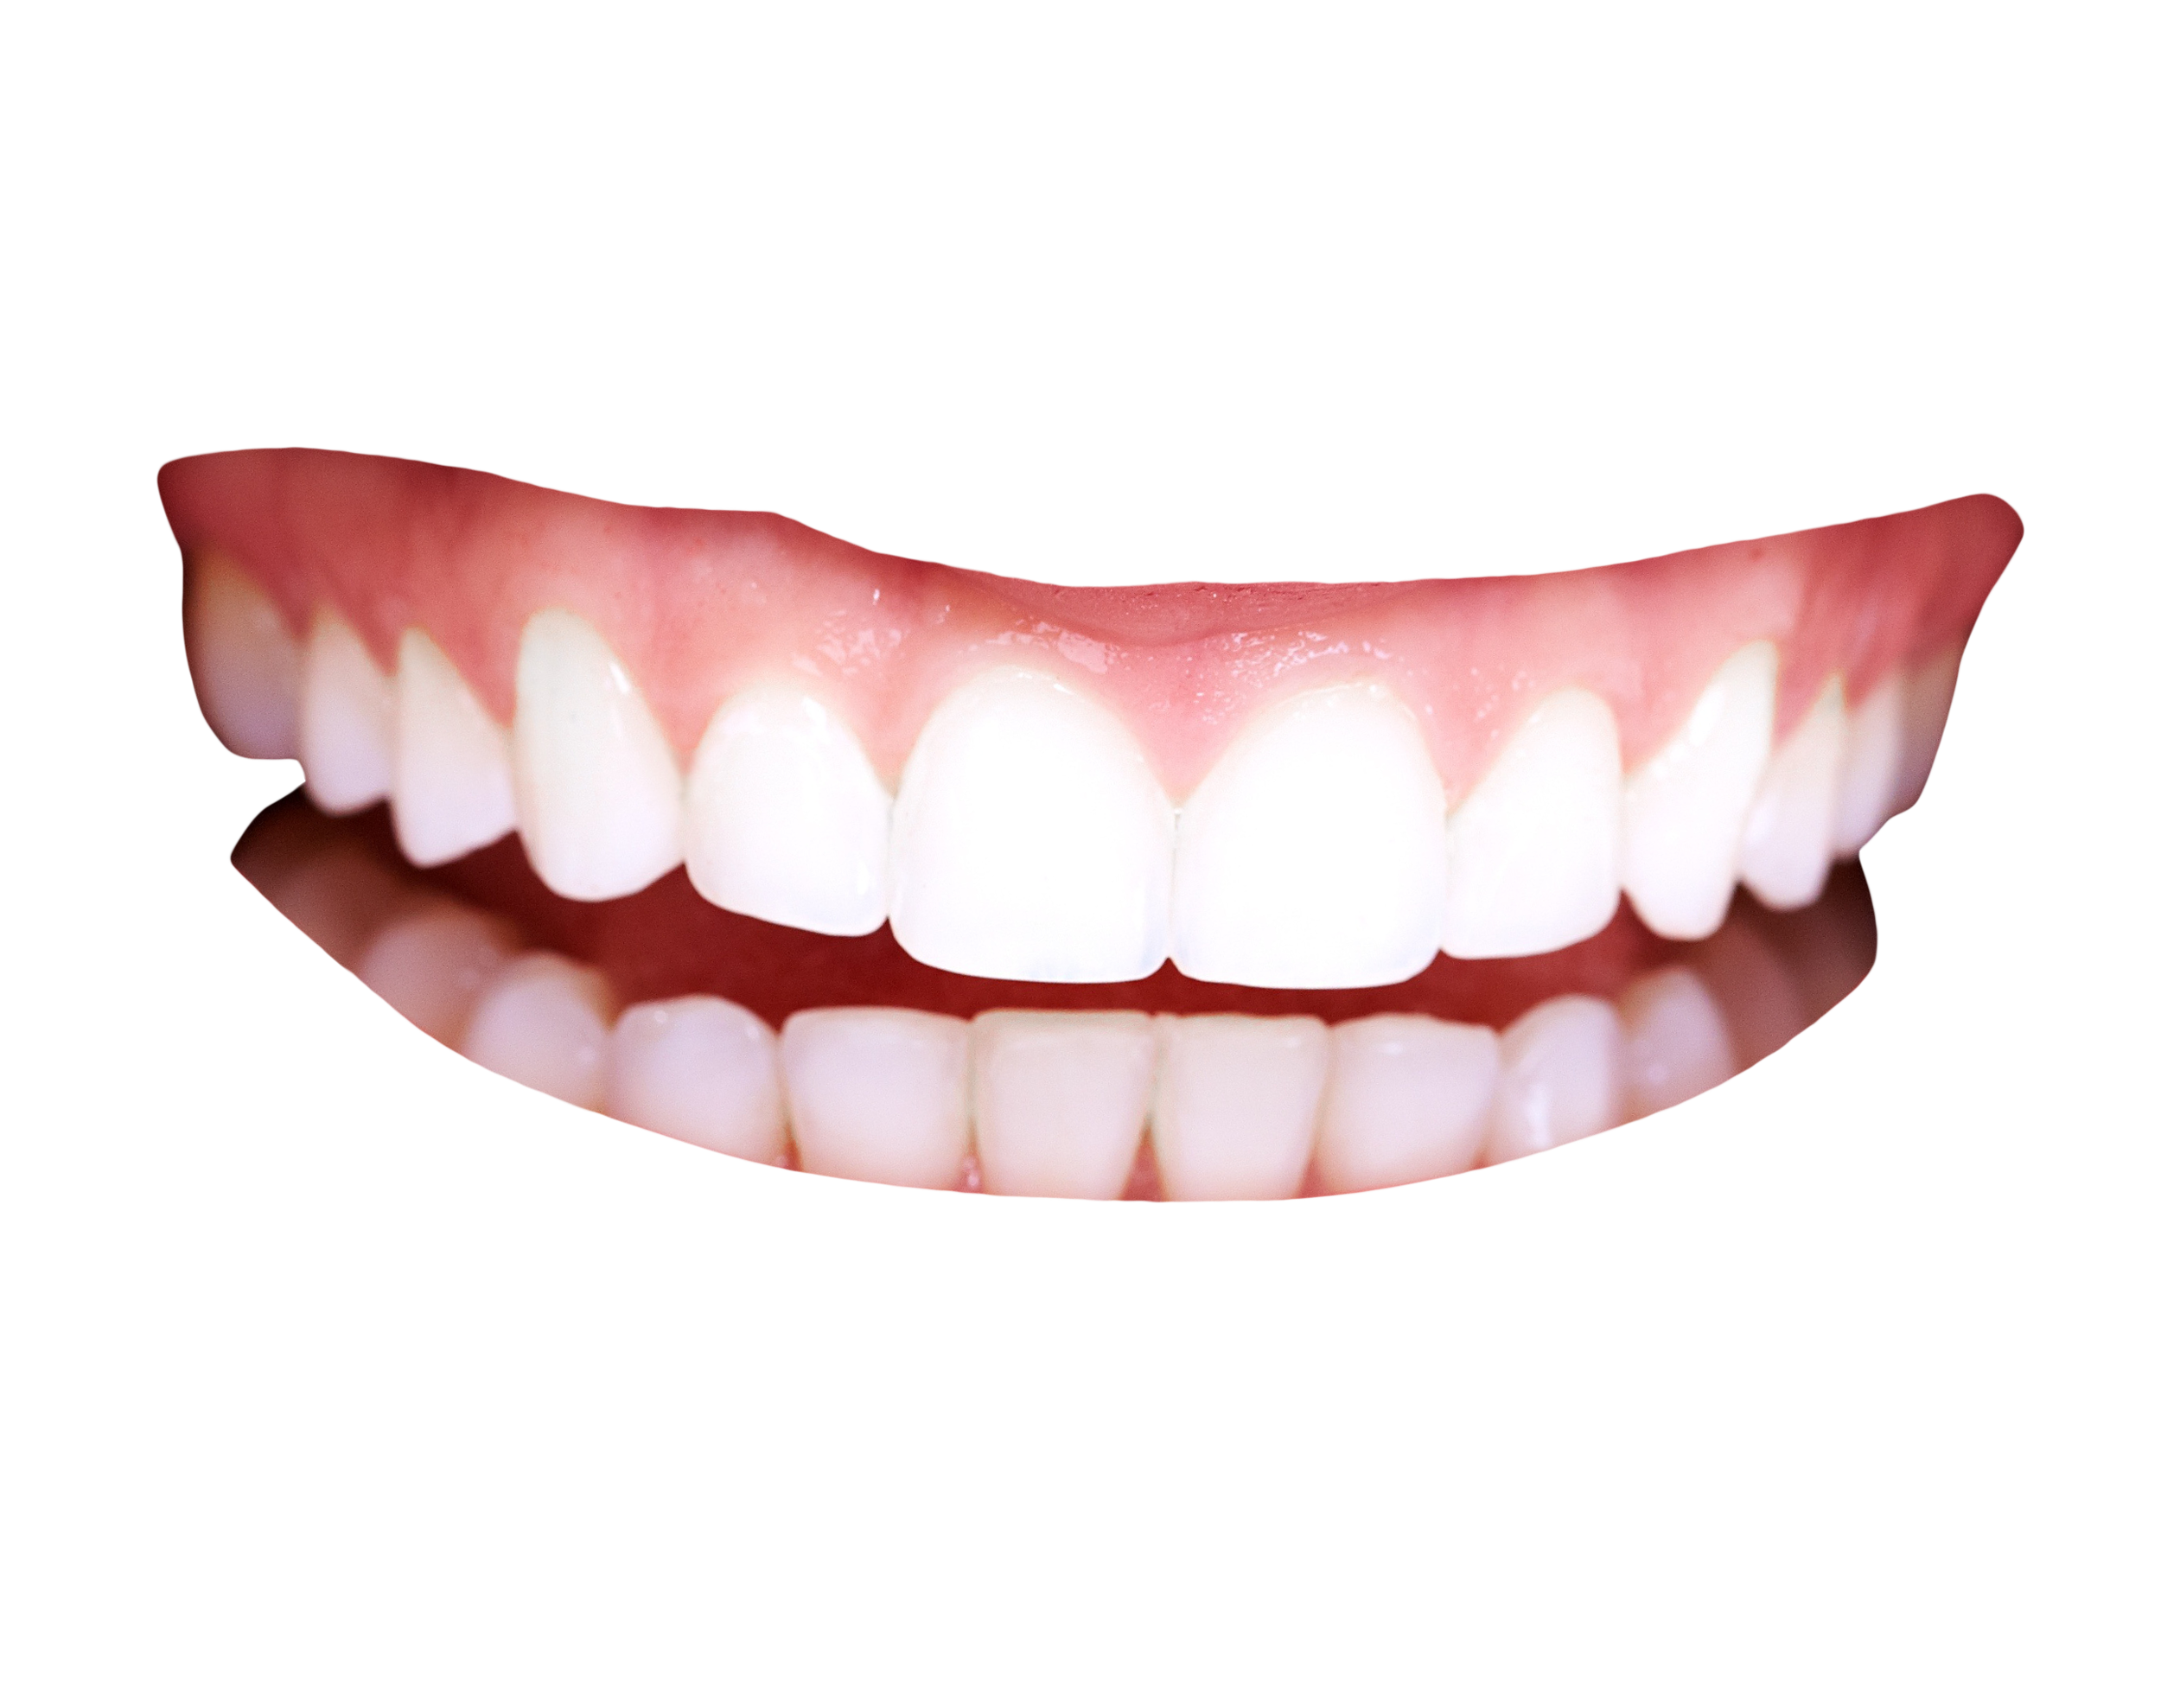 teeth png